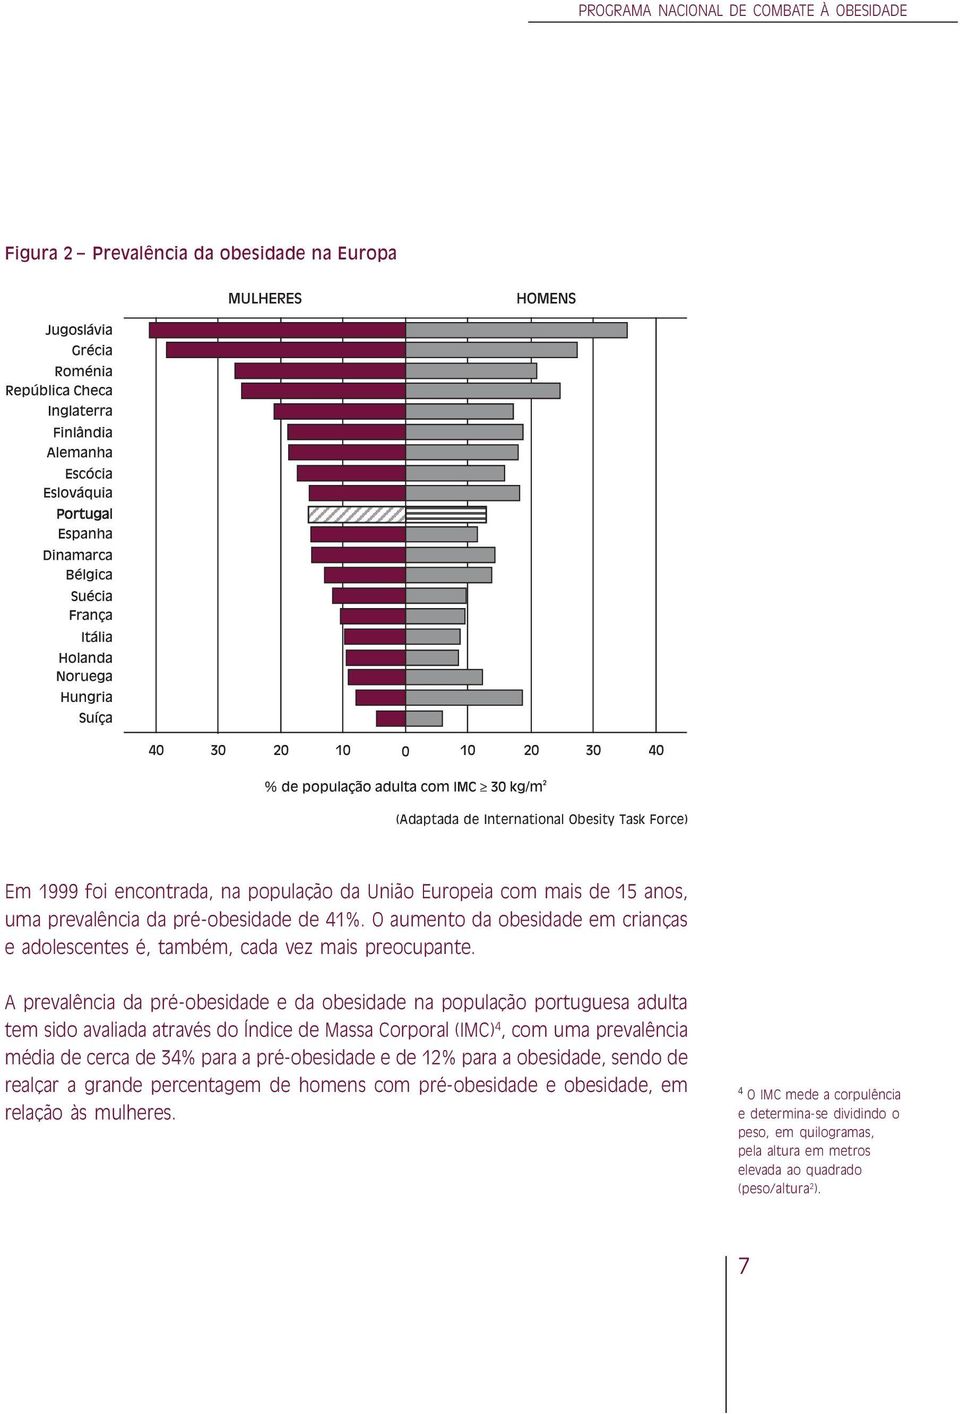 A prevalência da pré-obesidade e da obesidade na população portuguesa adulta tem sido avaliada através do Índice de Massa Corporal (IMC) 4, com uma prevalência média de cerca de 34% para a